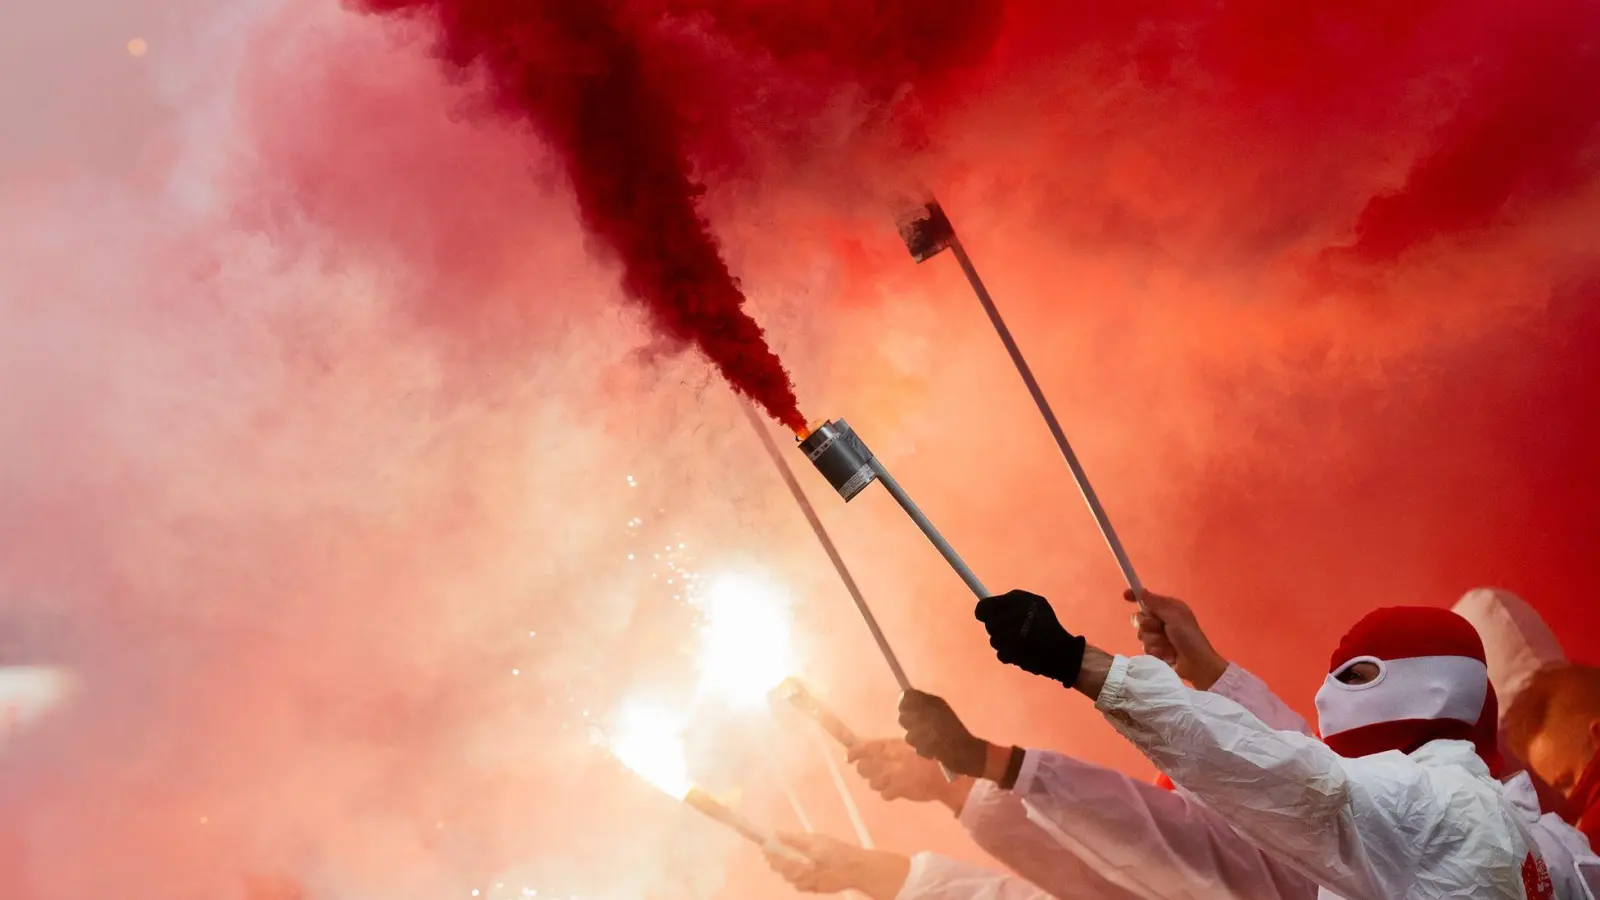 Das Abbrennen von Pyrotechnik durch Kölner Fans kommt dem FC teuer zu stehen. (Foto: Rolf Vennenbernd/dpa)